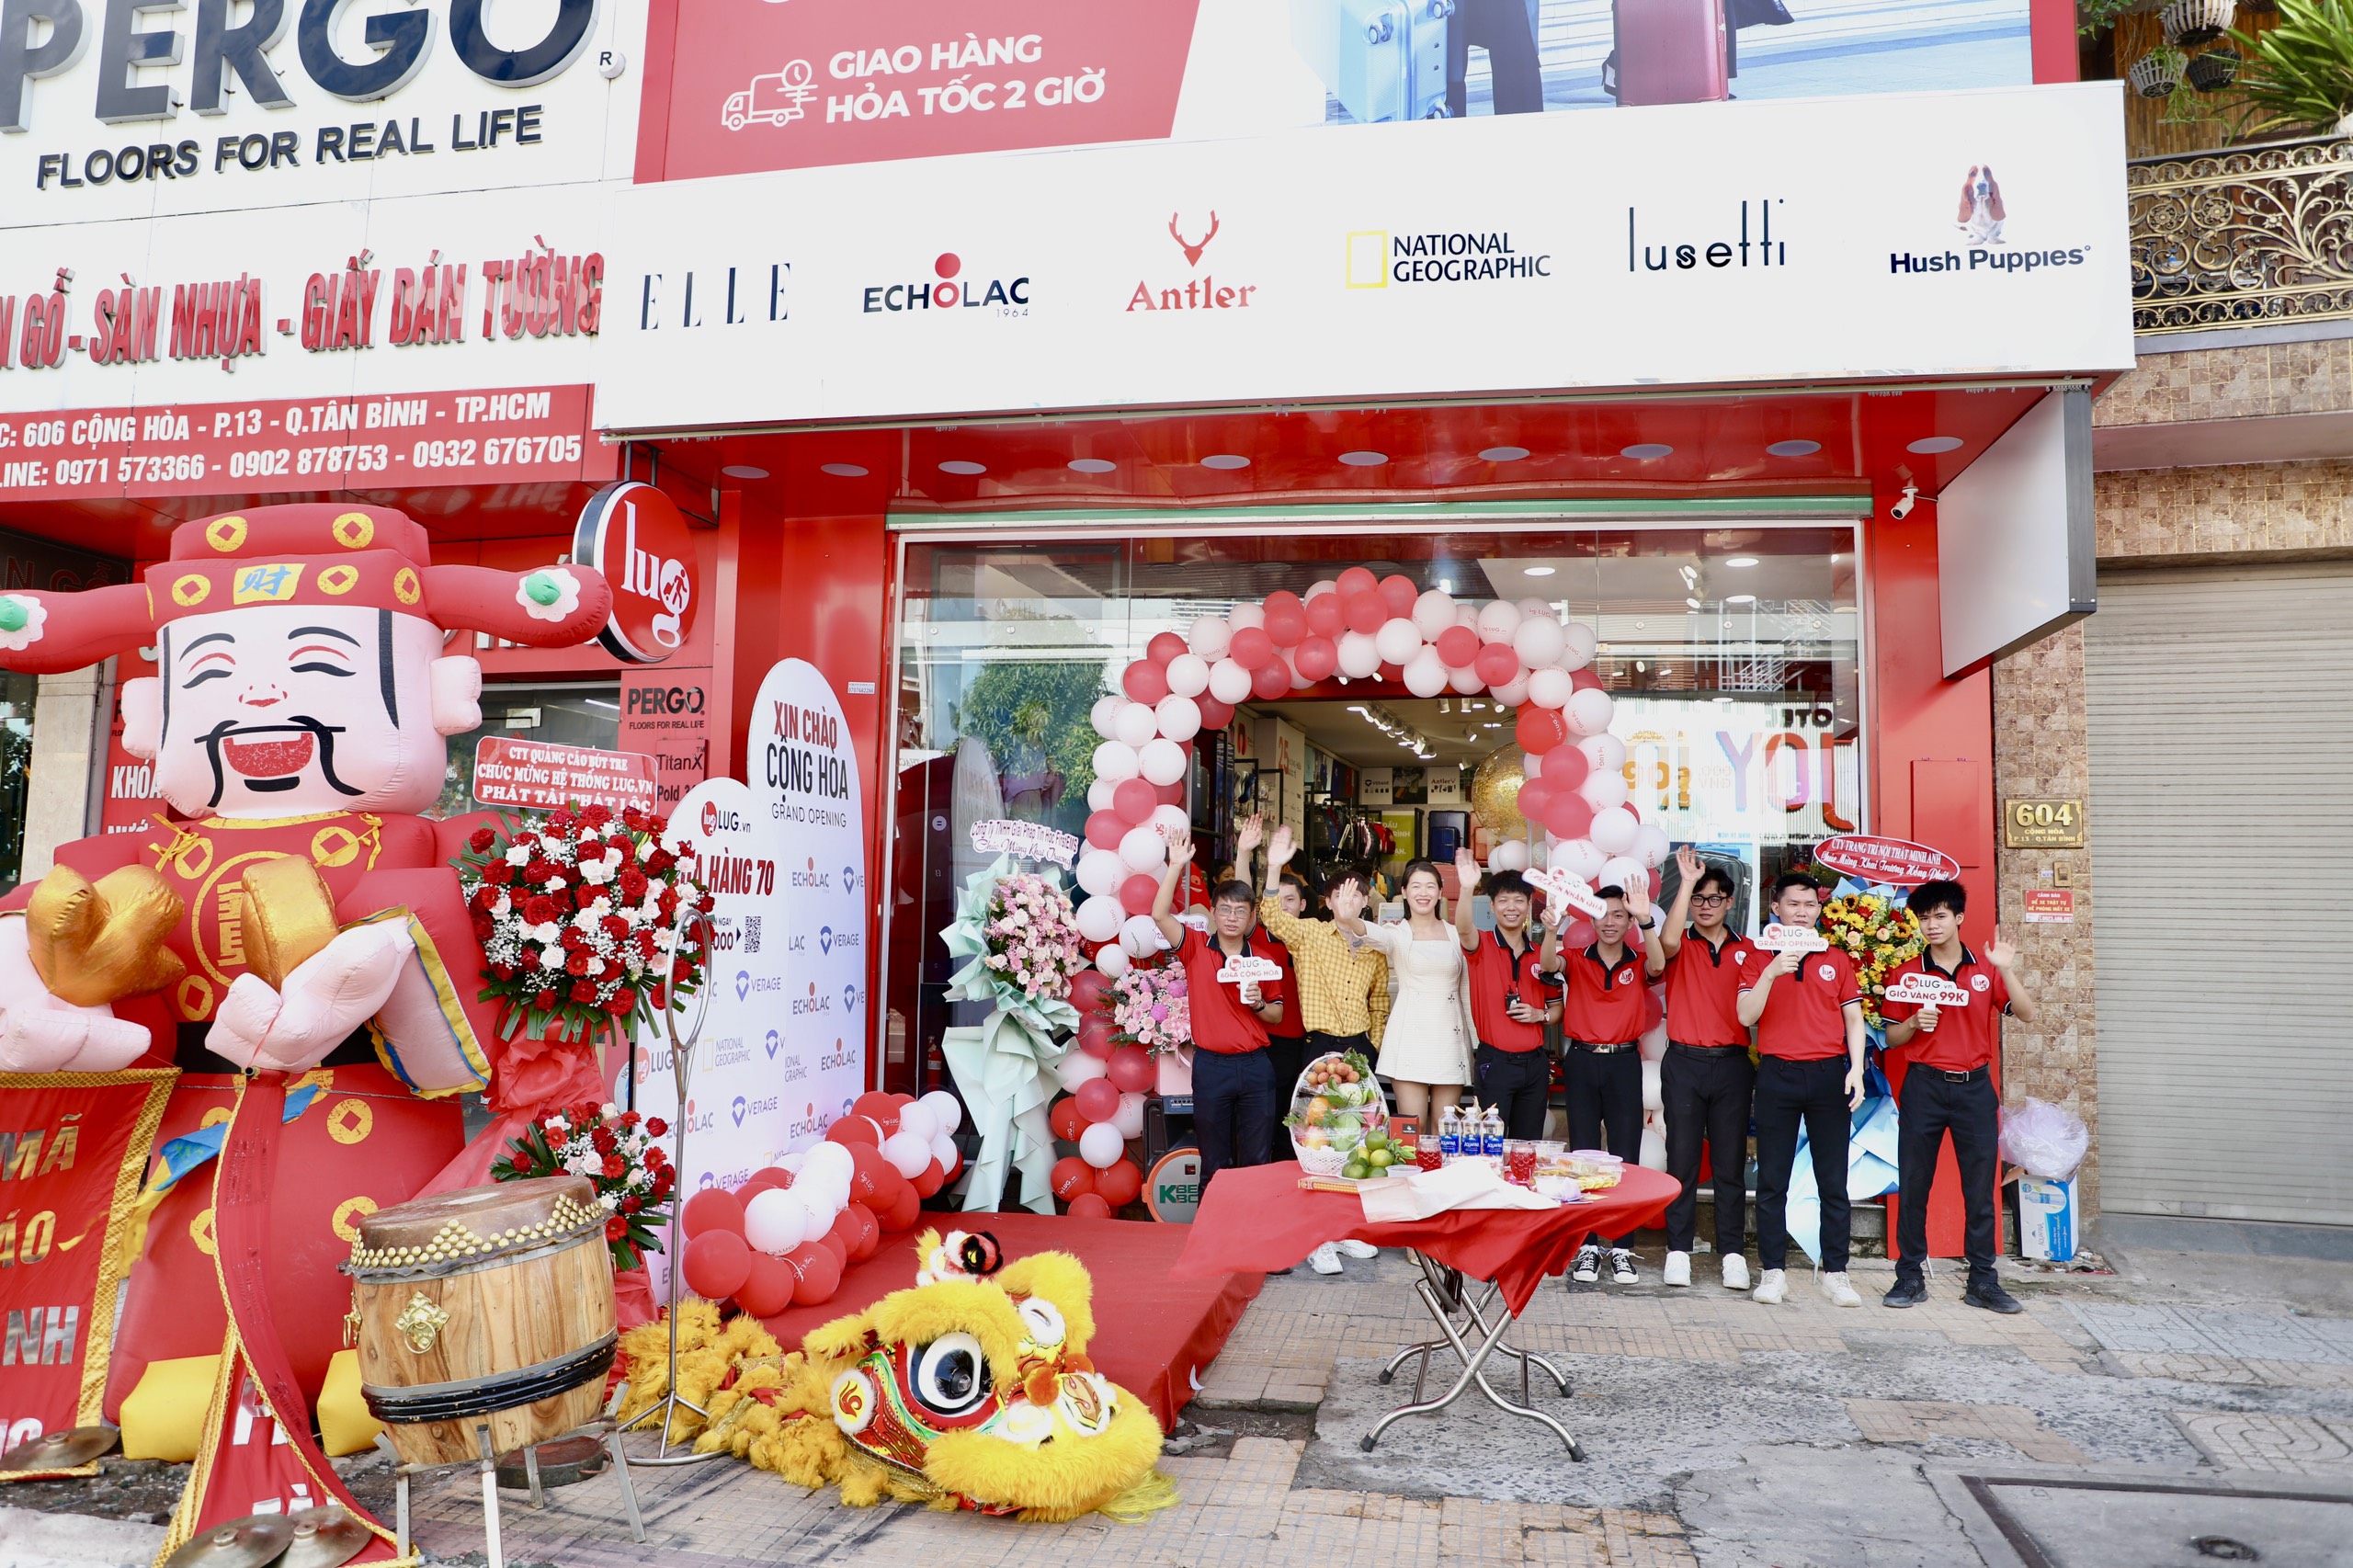 LUG.vn đồng loạt khai trương hai cửa hàng hành lý cao cấp tại Hà Nội và Thành phố Hồ Chí Minh - 4